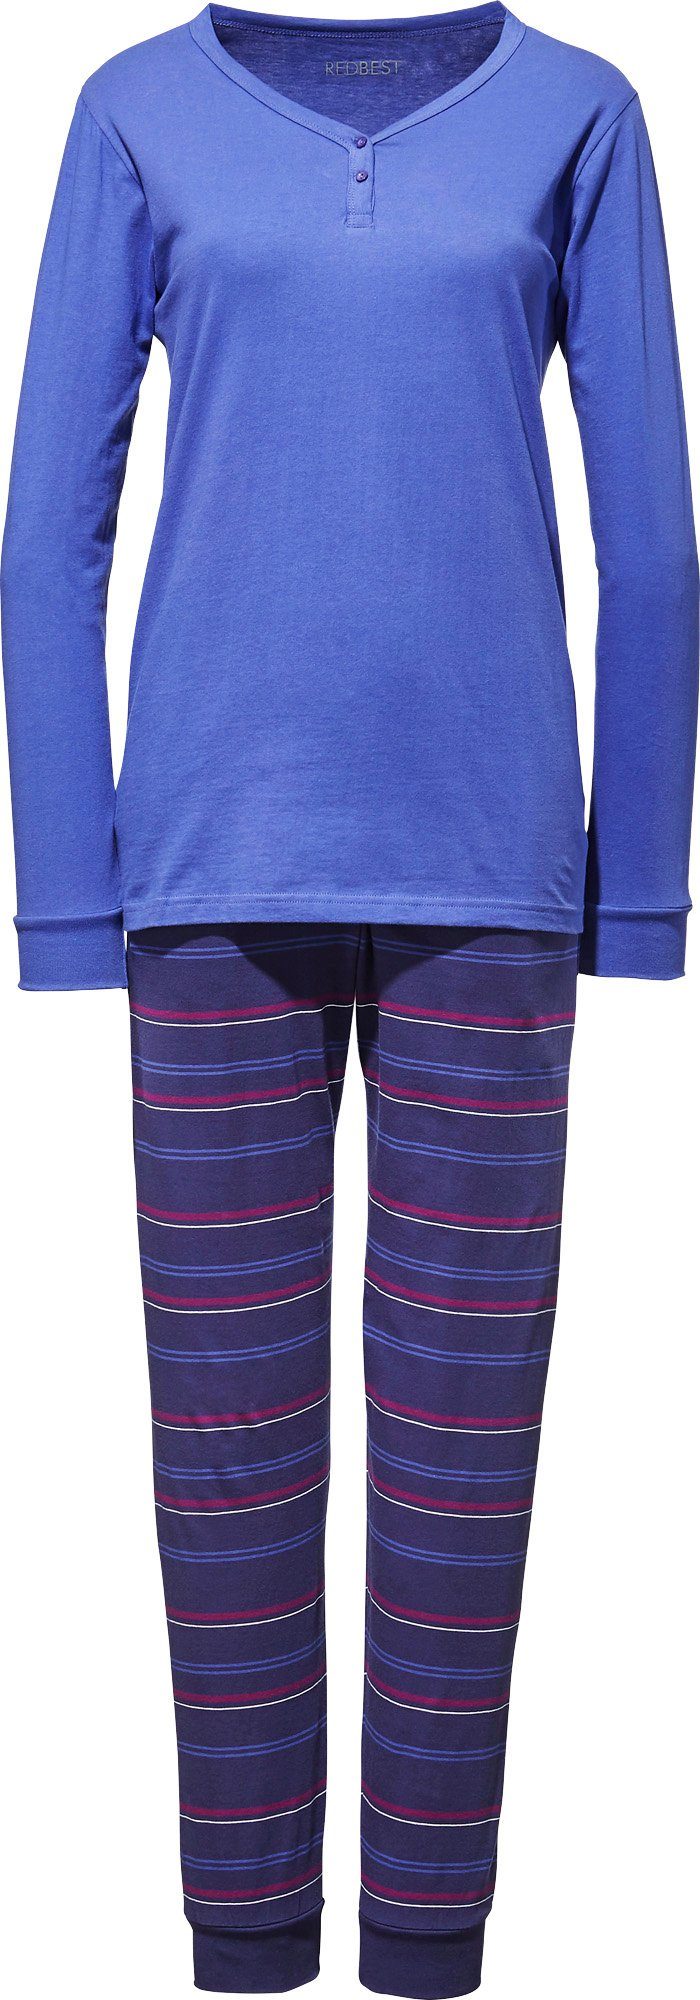 Single-Jersey Damen-Schlafanzug Pyjama Streifen REDBEST